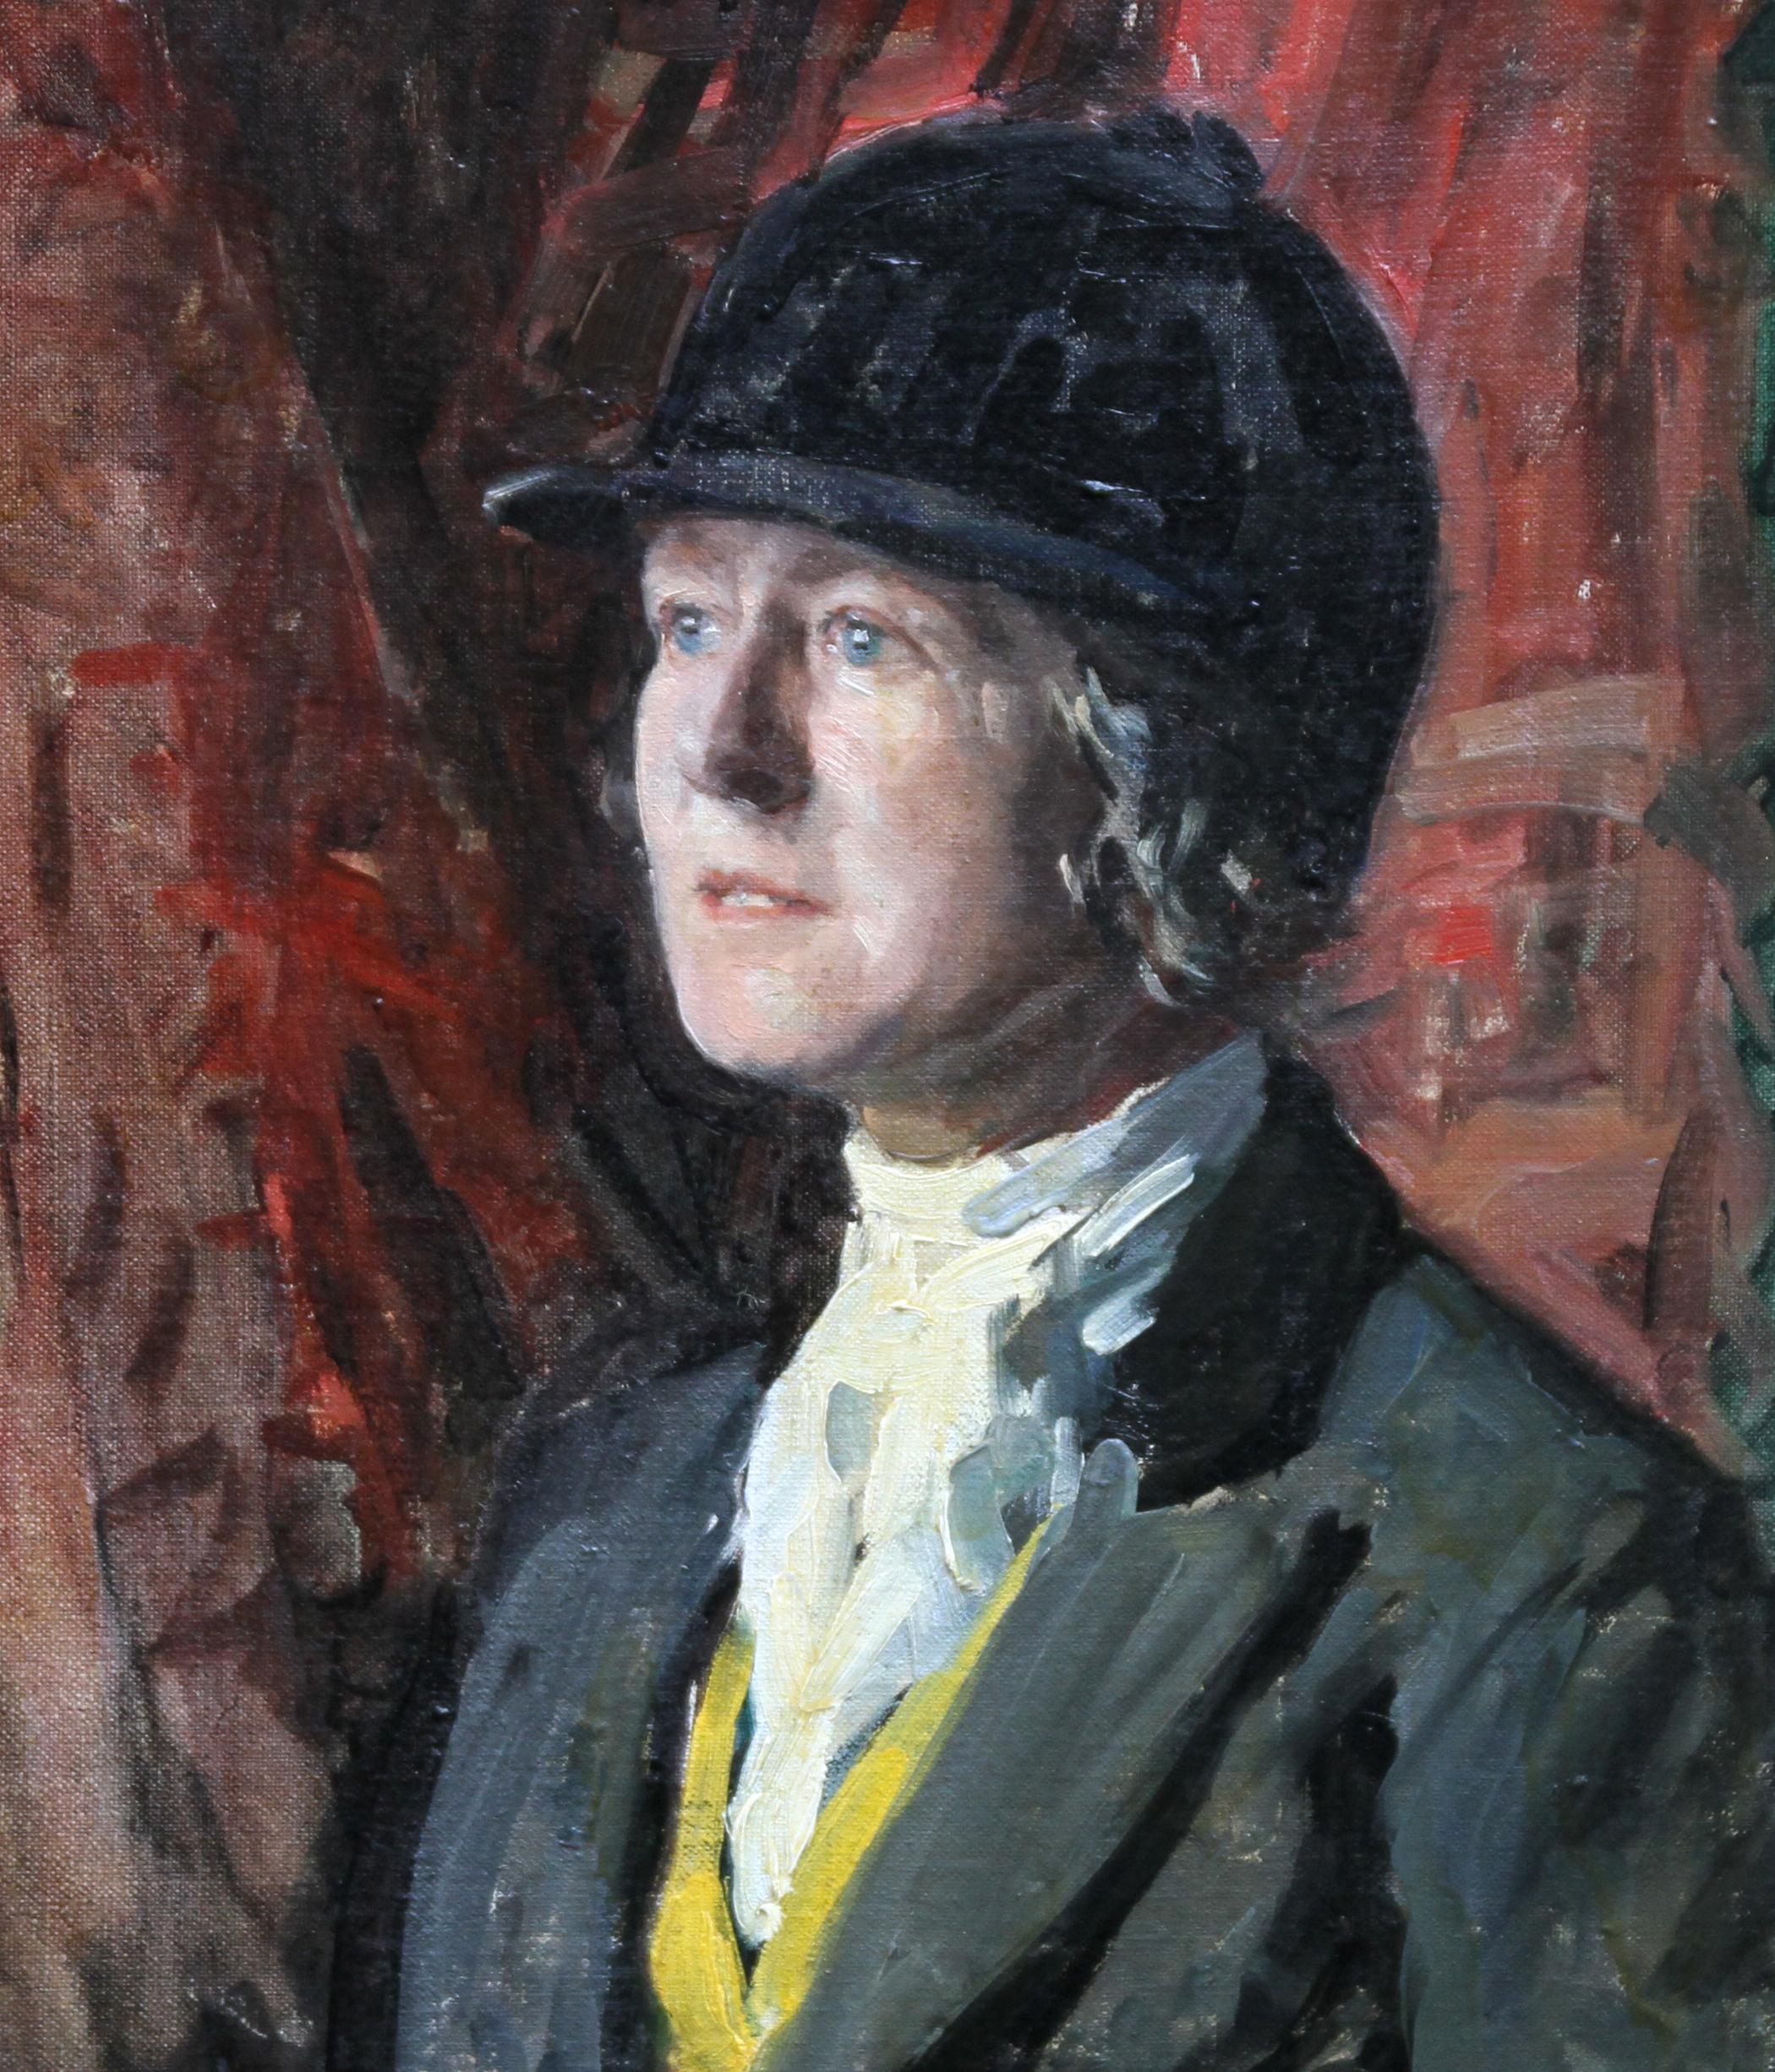 Ein feines Porträt-Ölgemälde des bekannten schottischen Künstlers David Murray Urquhart. Das um 1930 gemalte Porträt zeigt eine Frau in Reitkleidung und weist wunderbare Farbtöne und Pinselstriche auf. Ein schönes Beispiel für britische